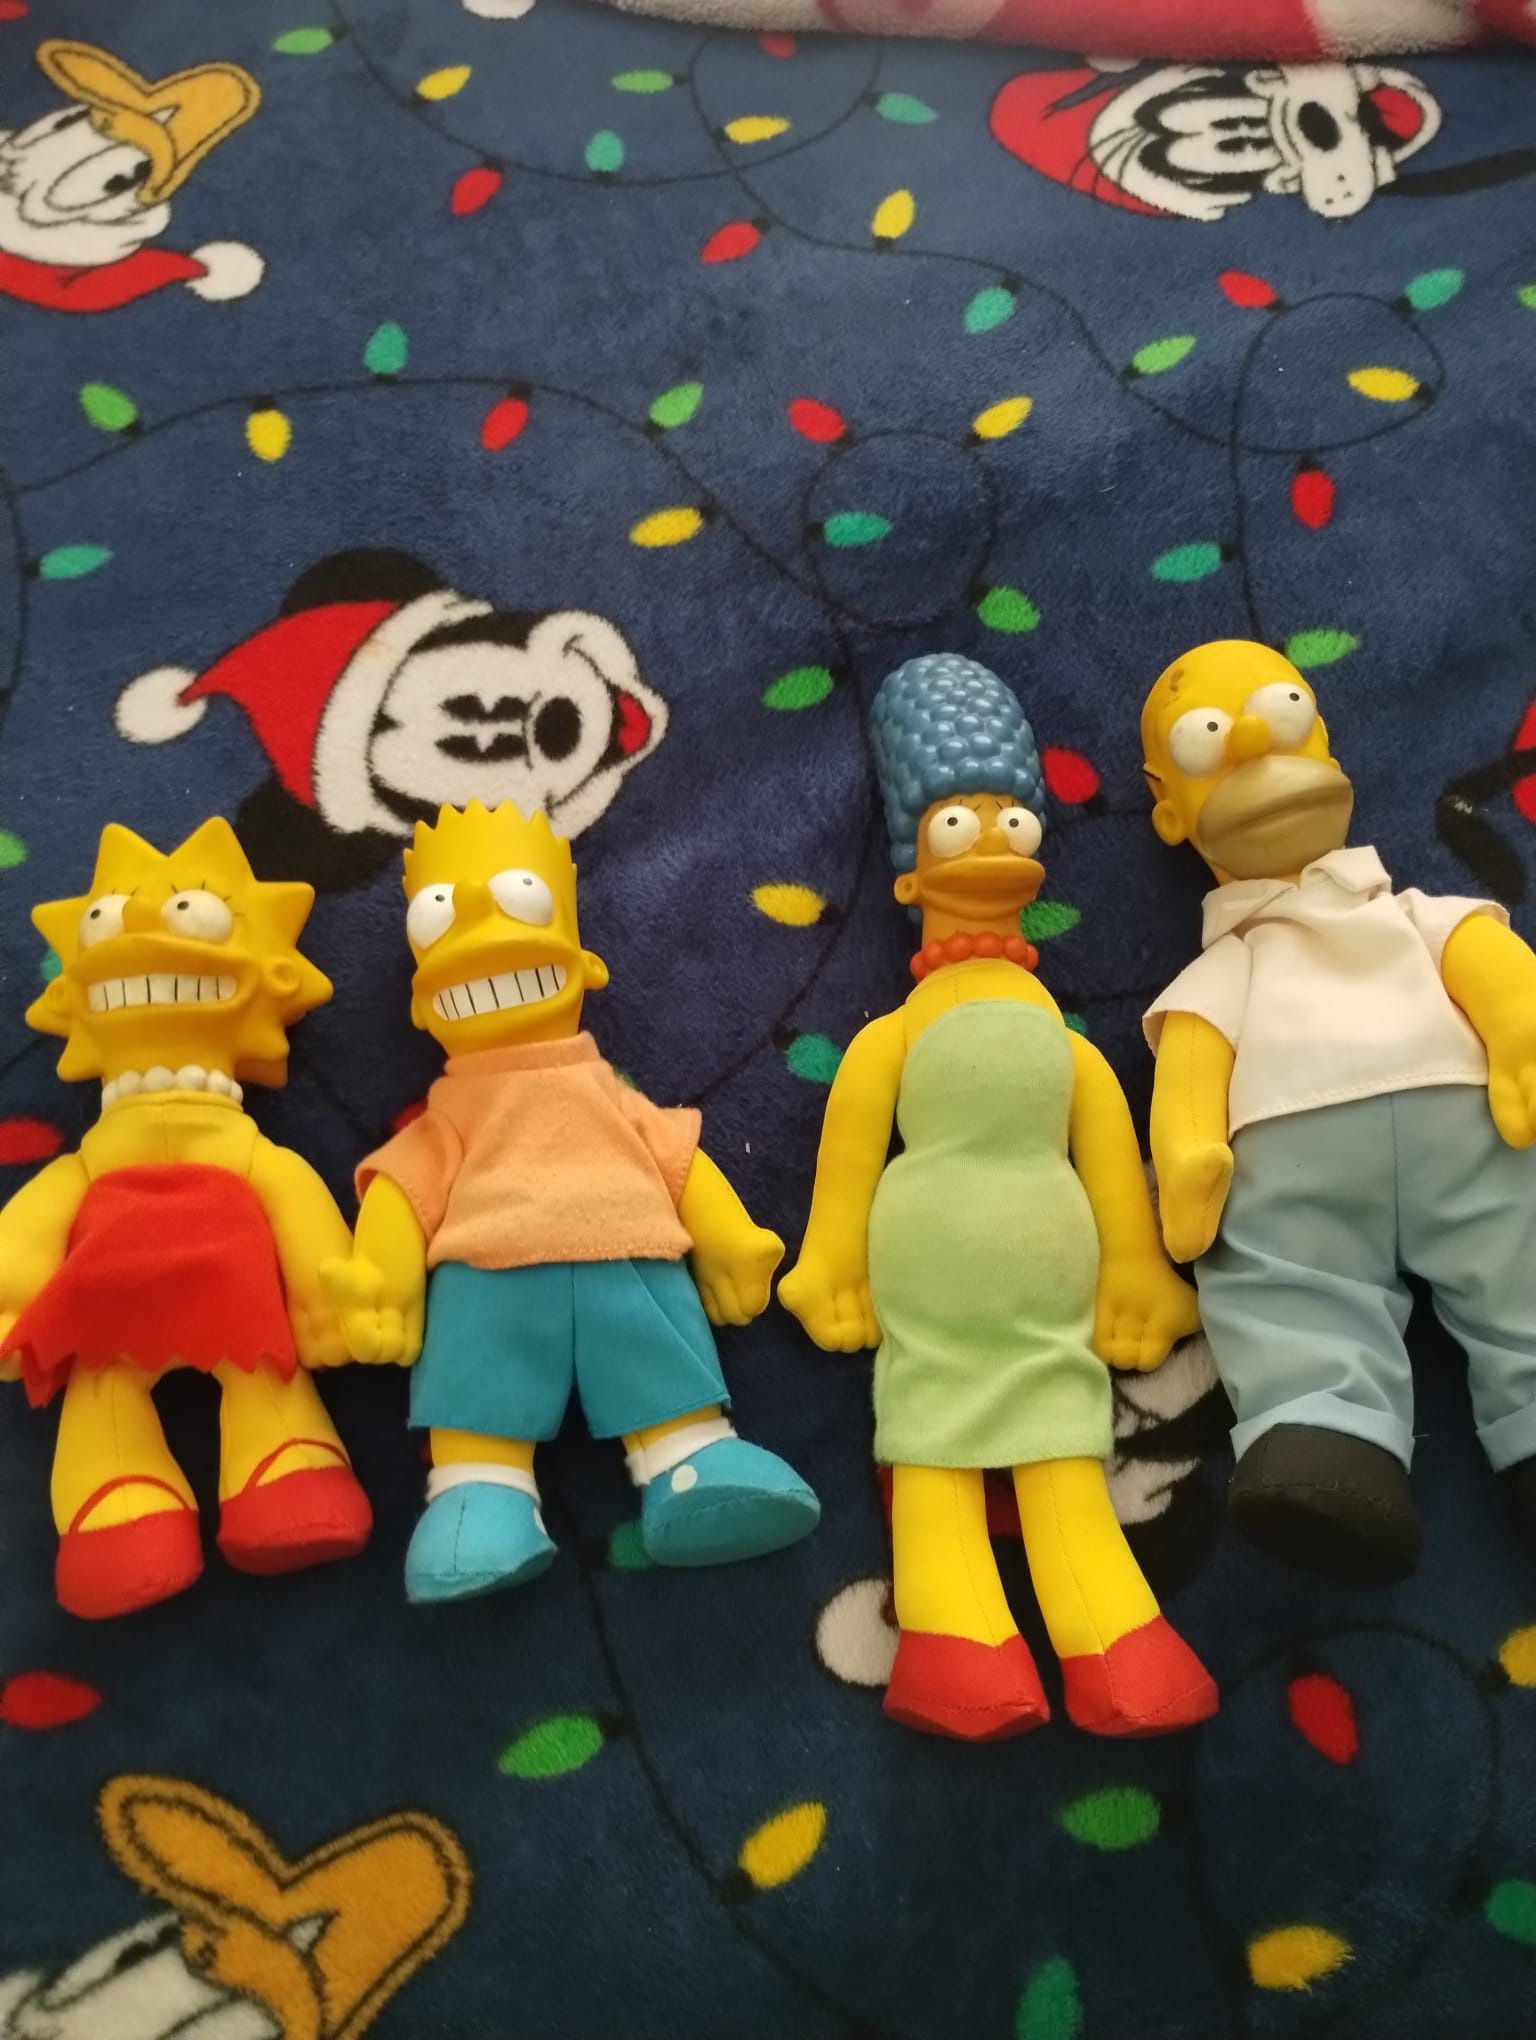 Simpsons 1990 